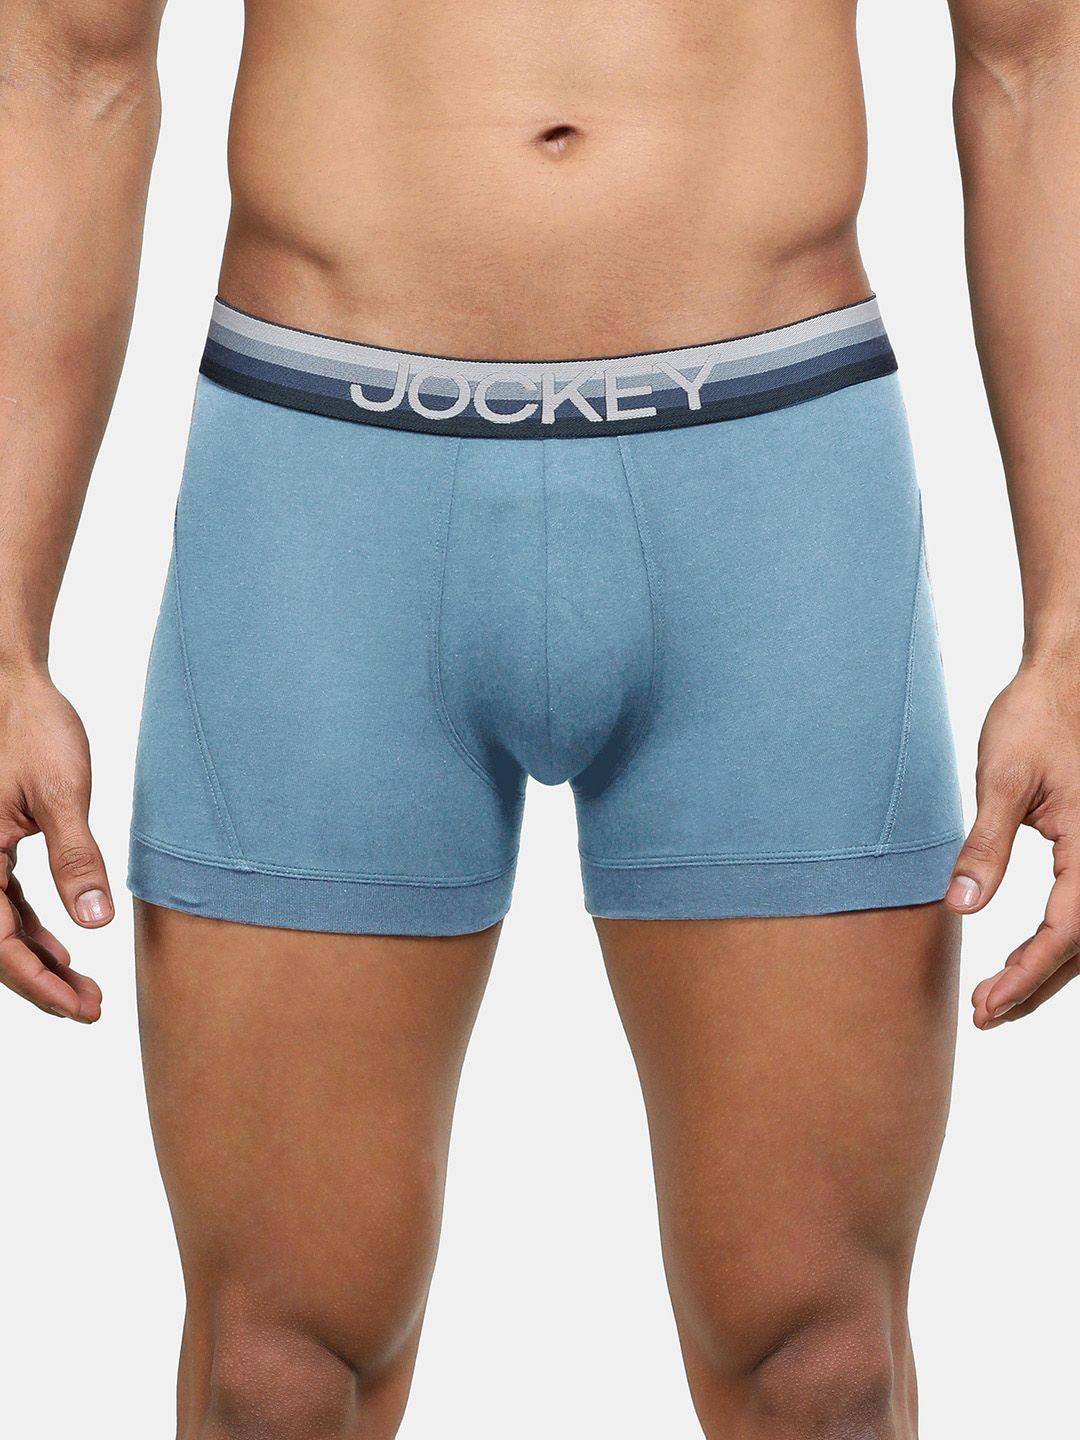 jockey-men-cotton-ultrasoft-trunk-us20-0105-agblu